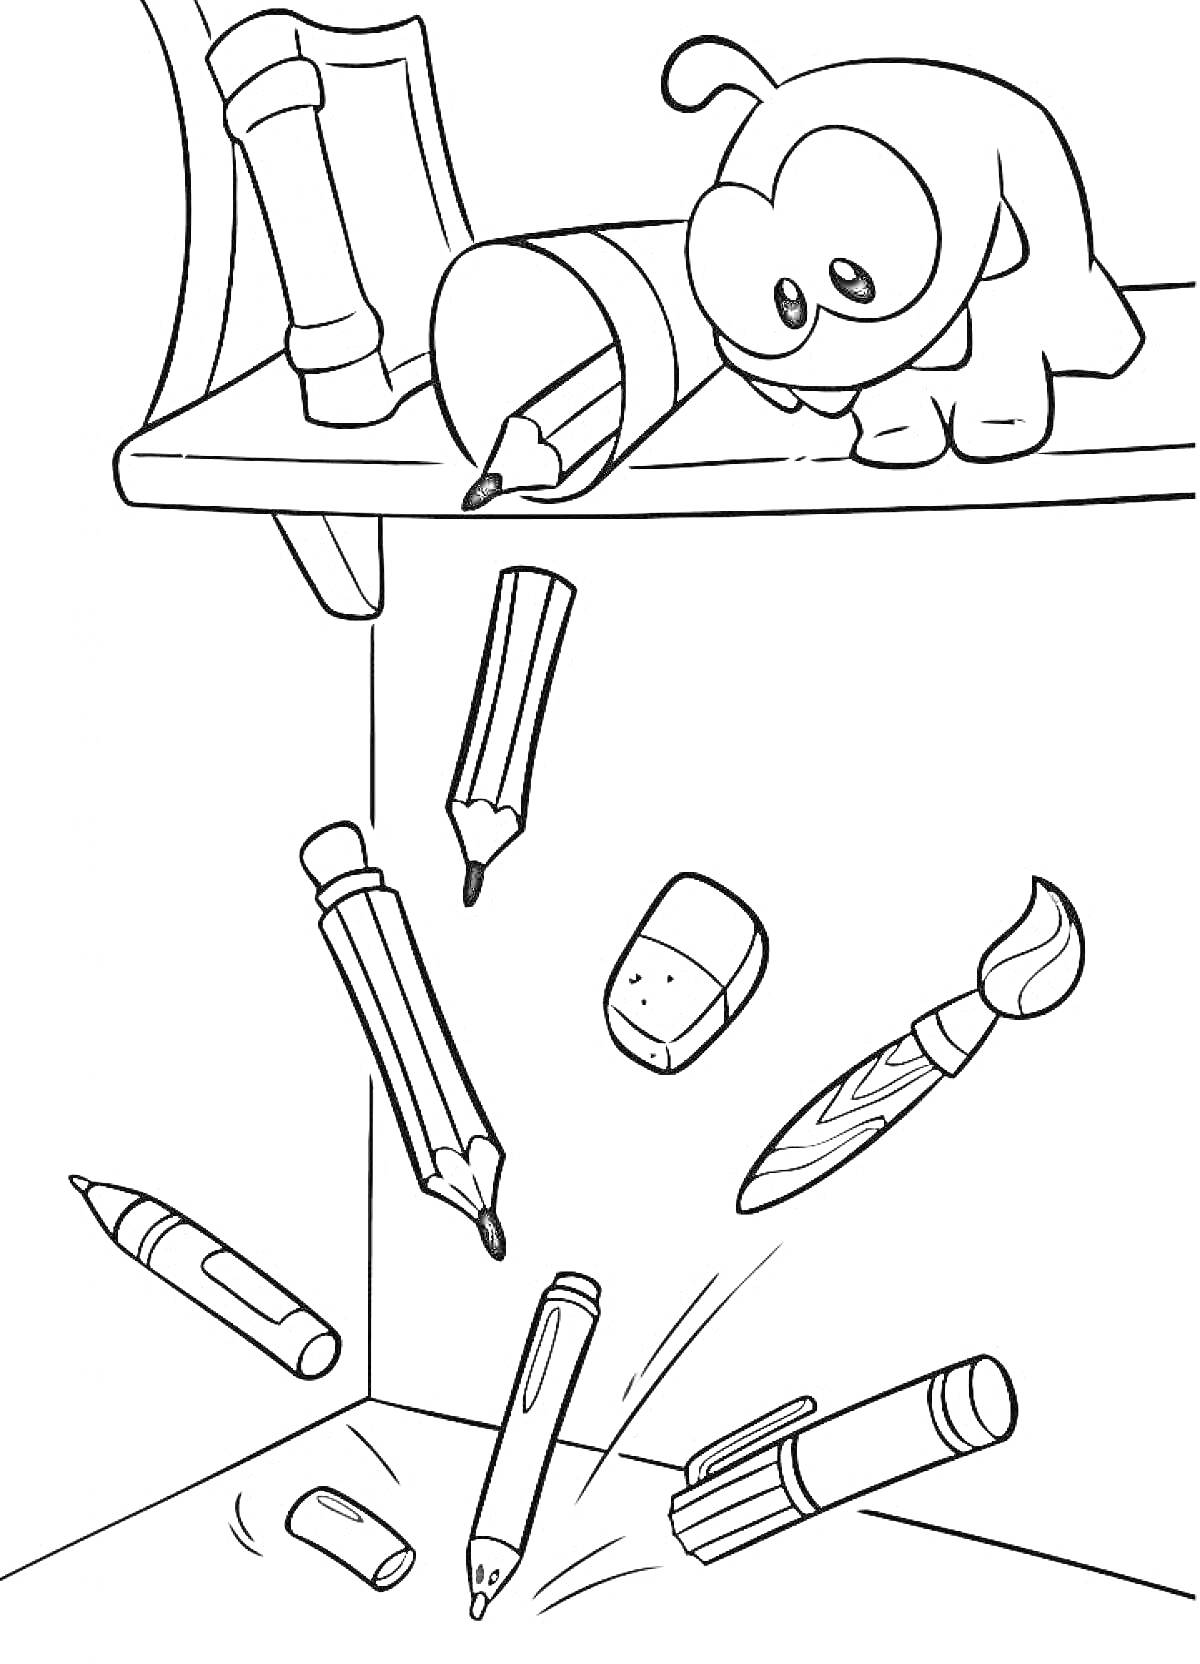 Раскраска Ам Ням на полке со школьными принадлежностями, падающими на пол (карандаши, ластик, кисточка, маркер, ручка, восковой мелок)